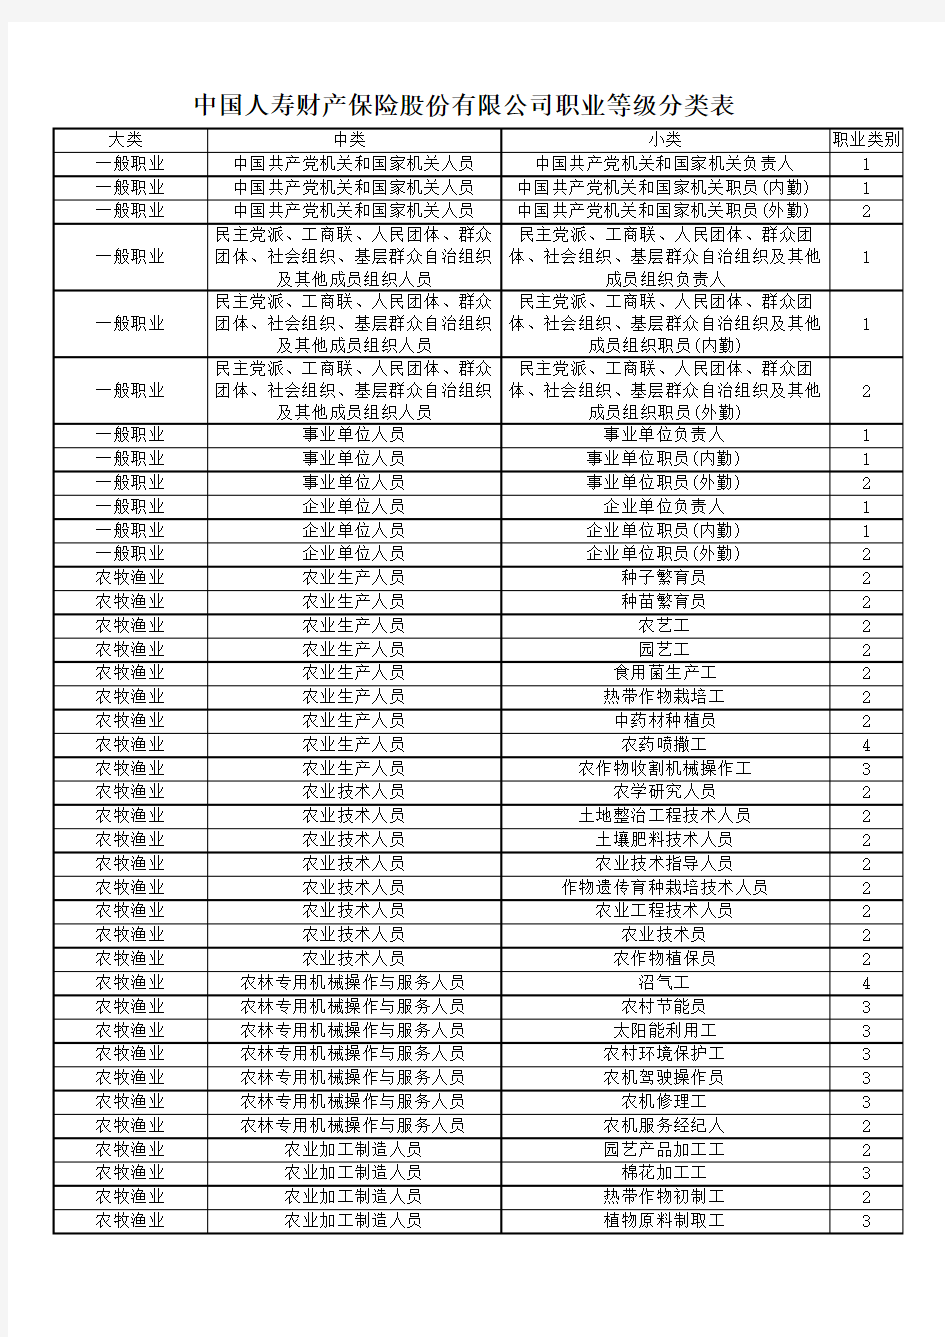 中国人寿财产保险股份有限公司职业等级分类表.pdf